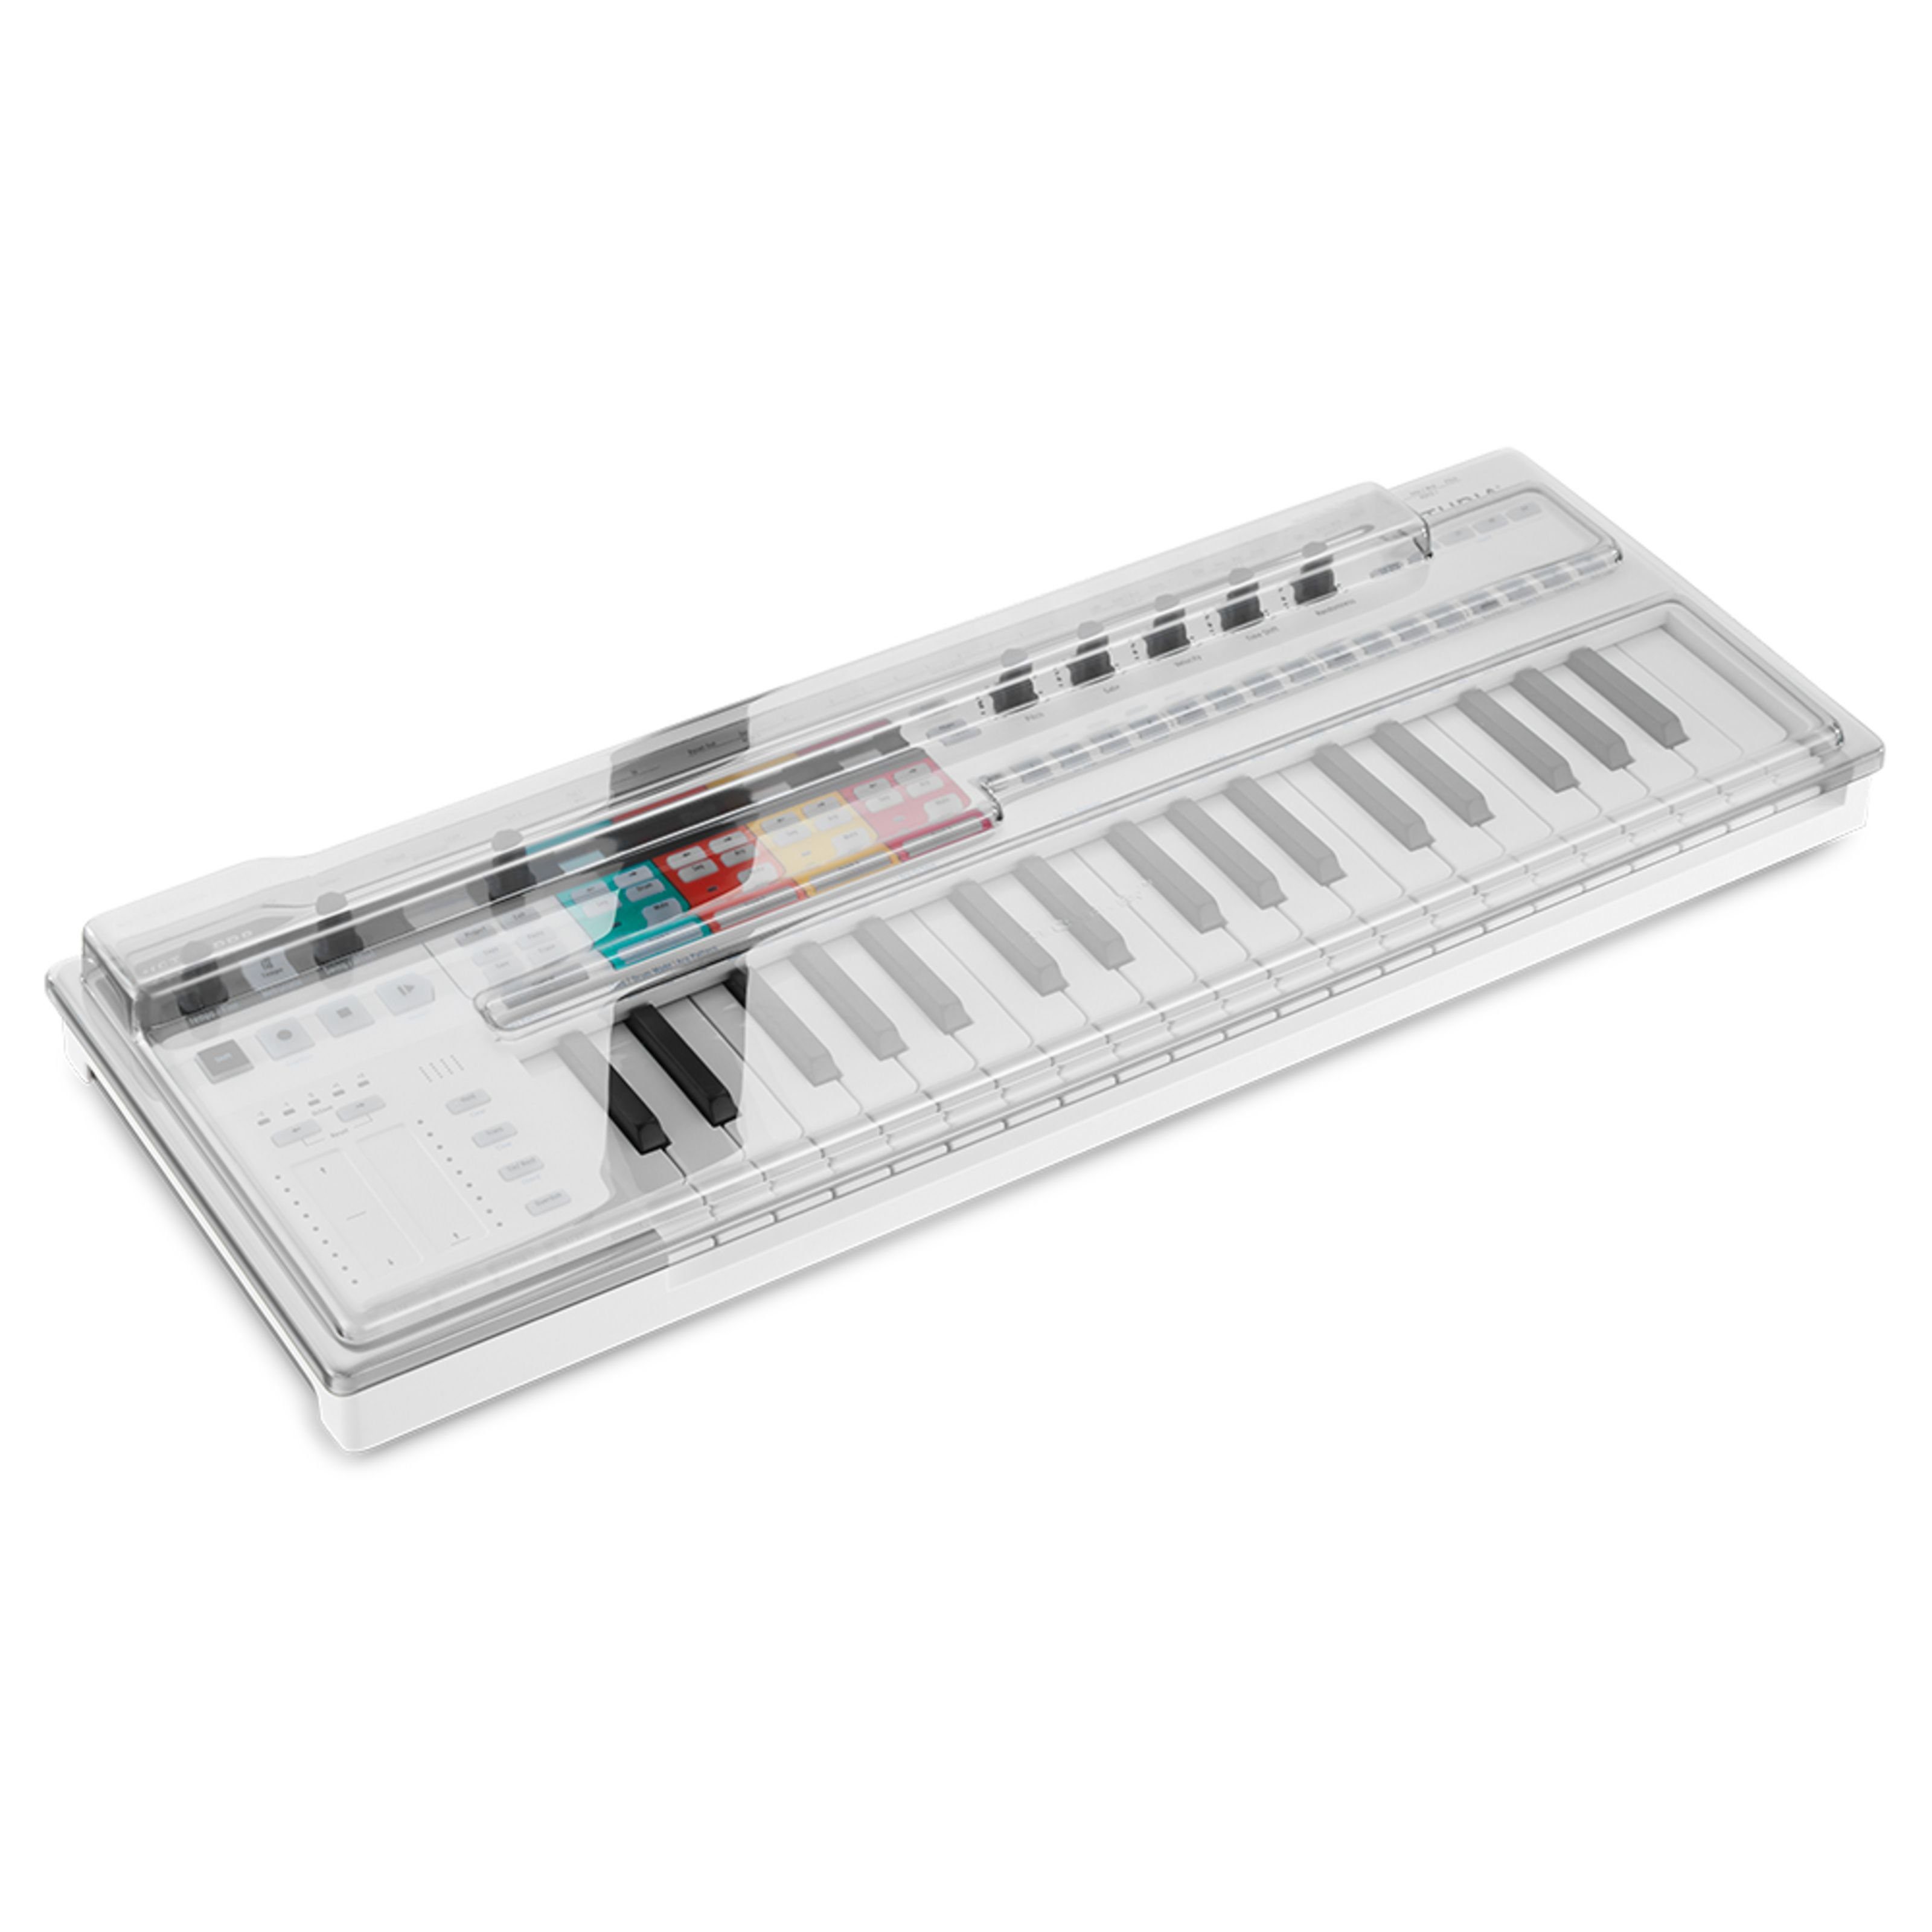 Keystep Cover Pro Decksaver Arturia für Keyboards - Abdeckung Spielzeug-Musikinstrument,